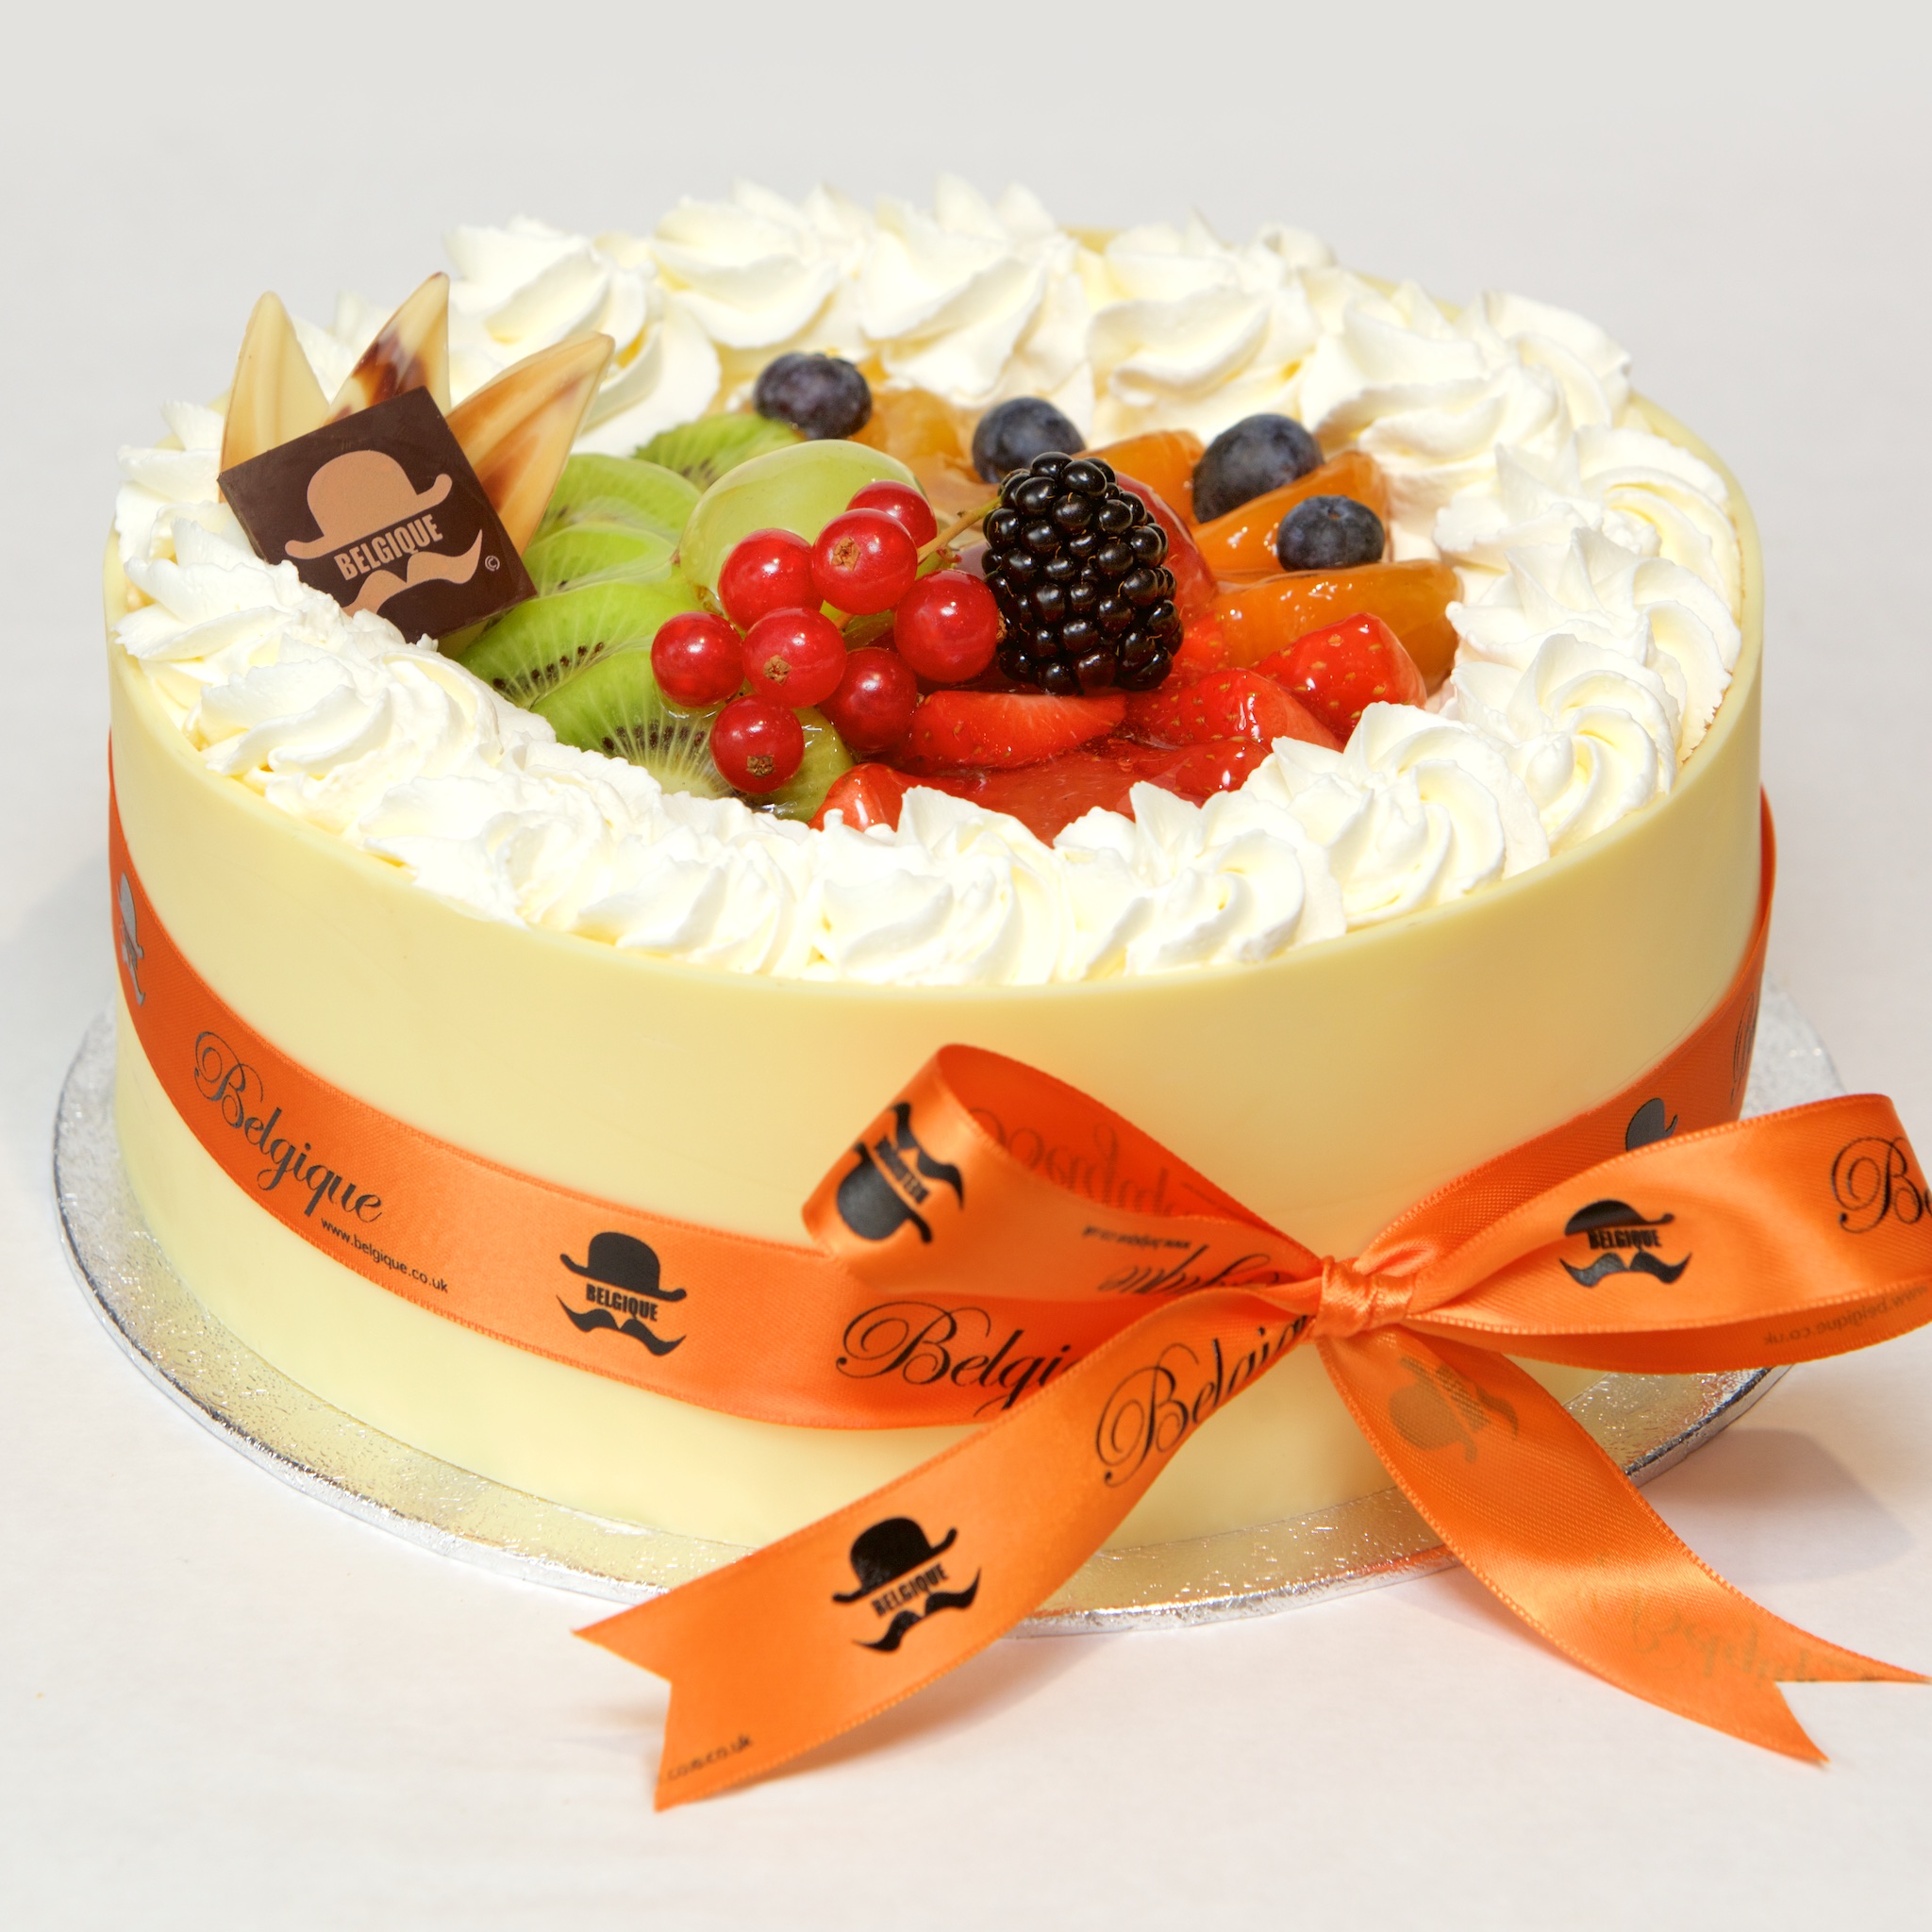 Fresh Cream Gateau Birthday Cake - Buy Any Cake Online